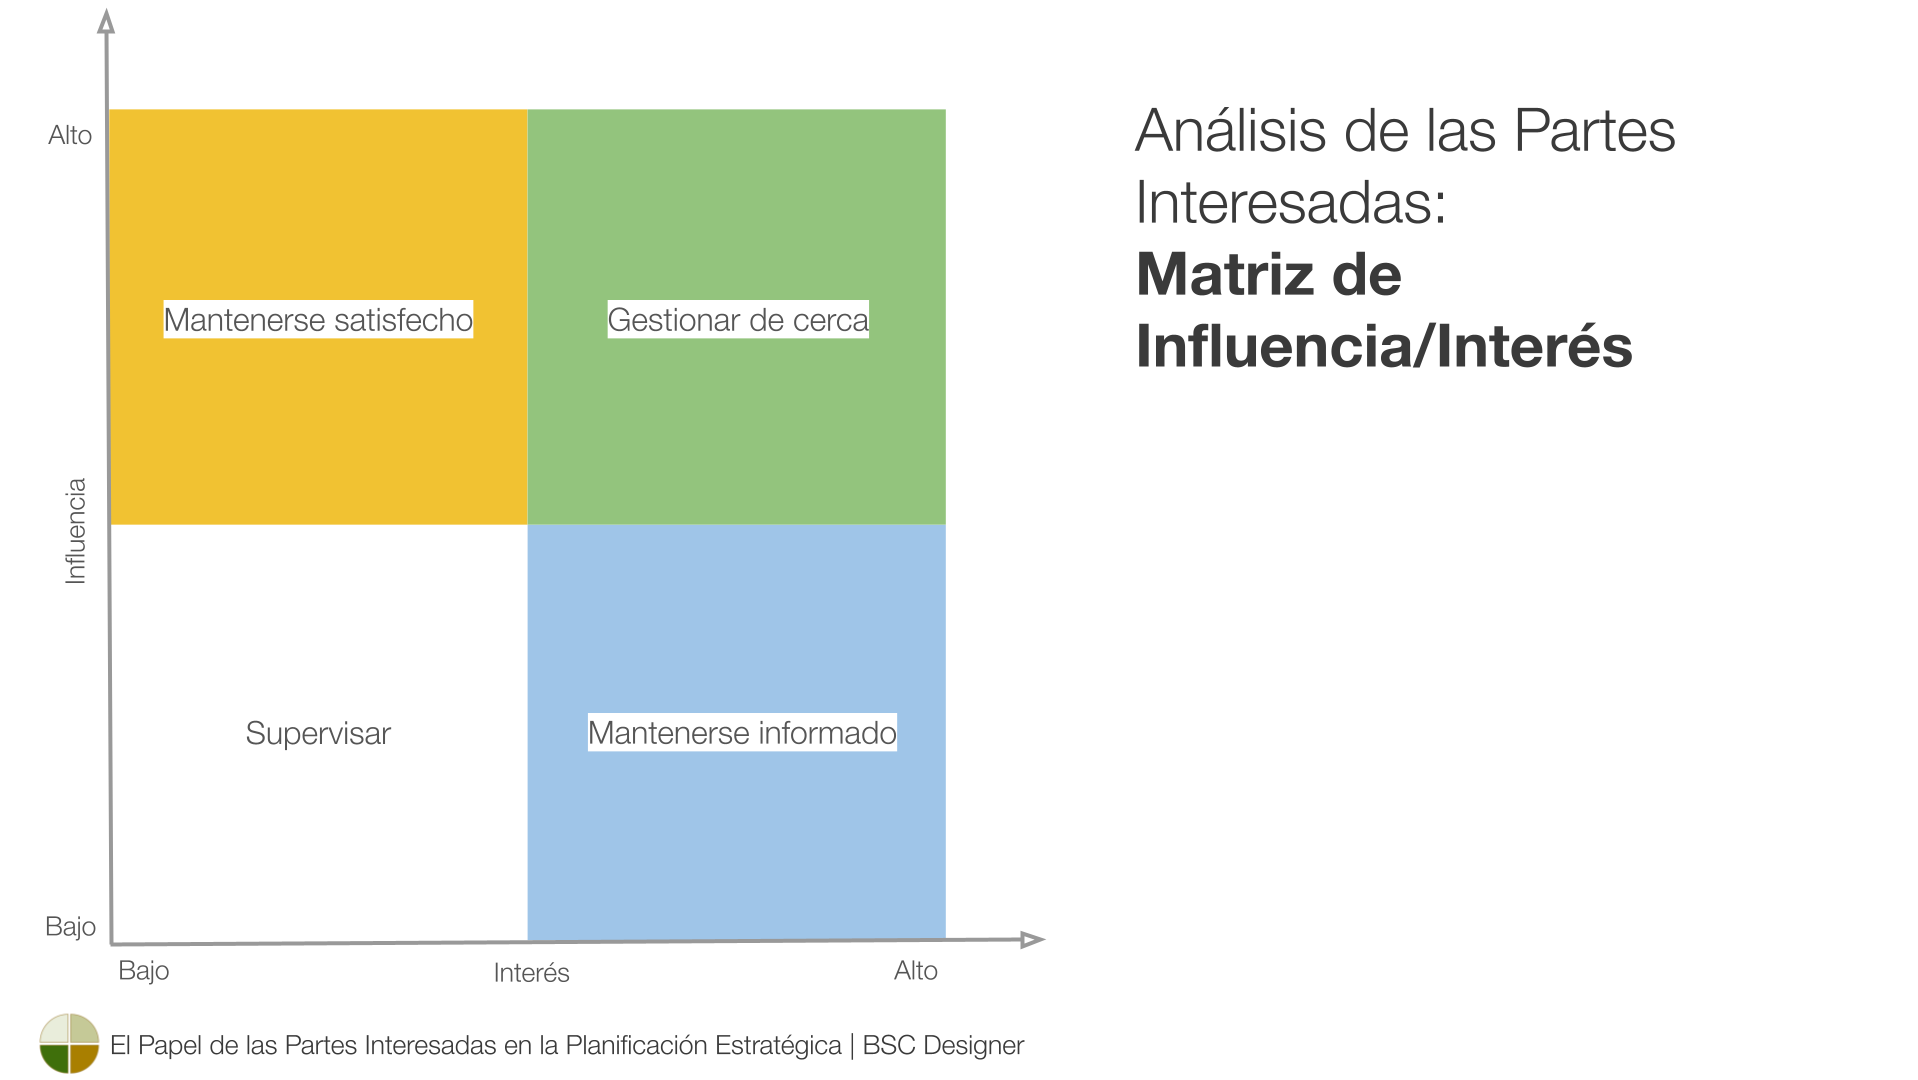 Análisis de las partes interesadas: Matriz de influencia/interés